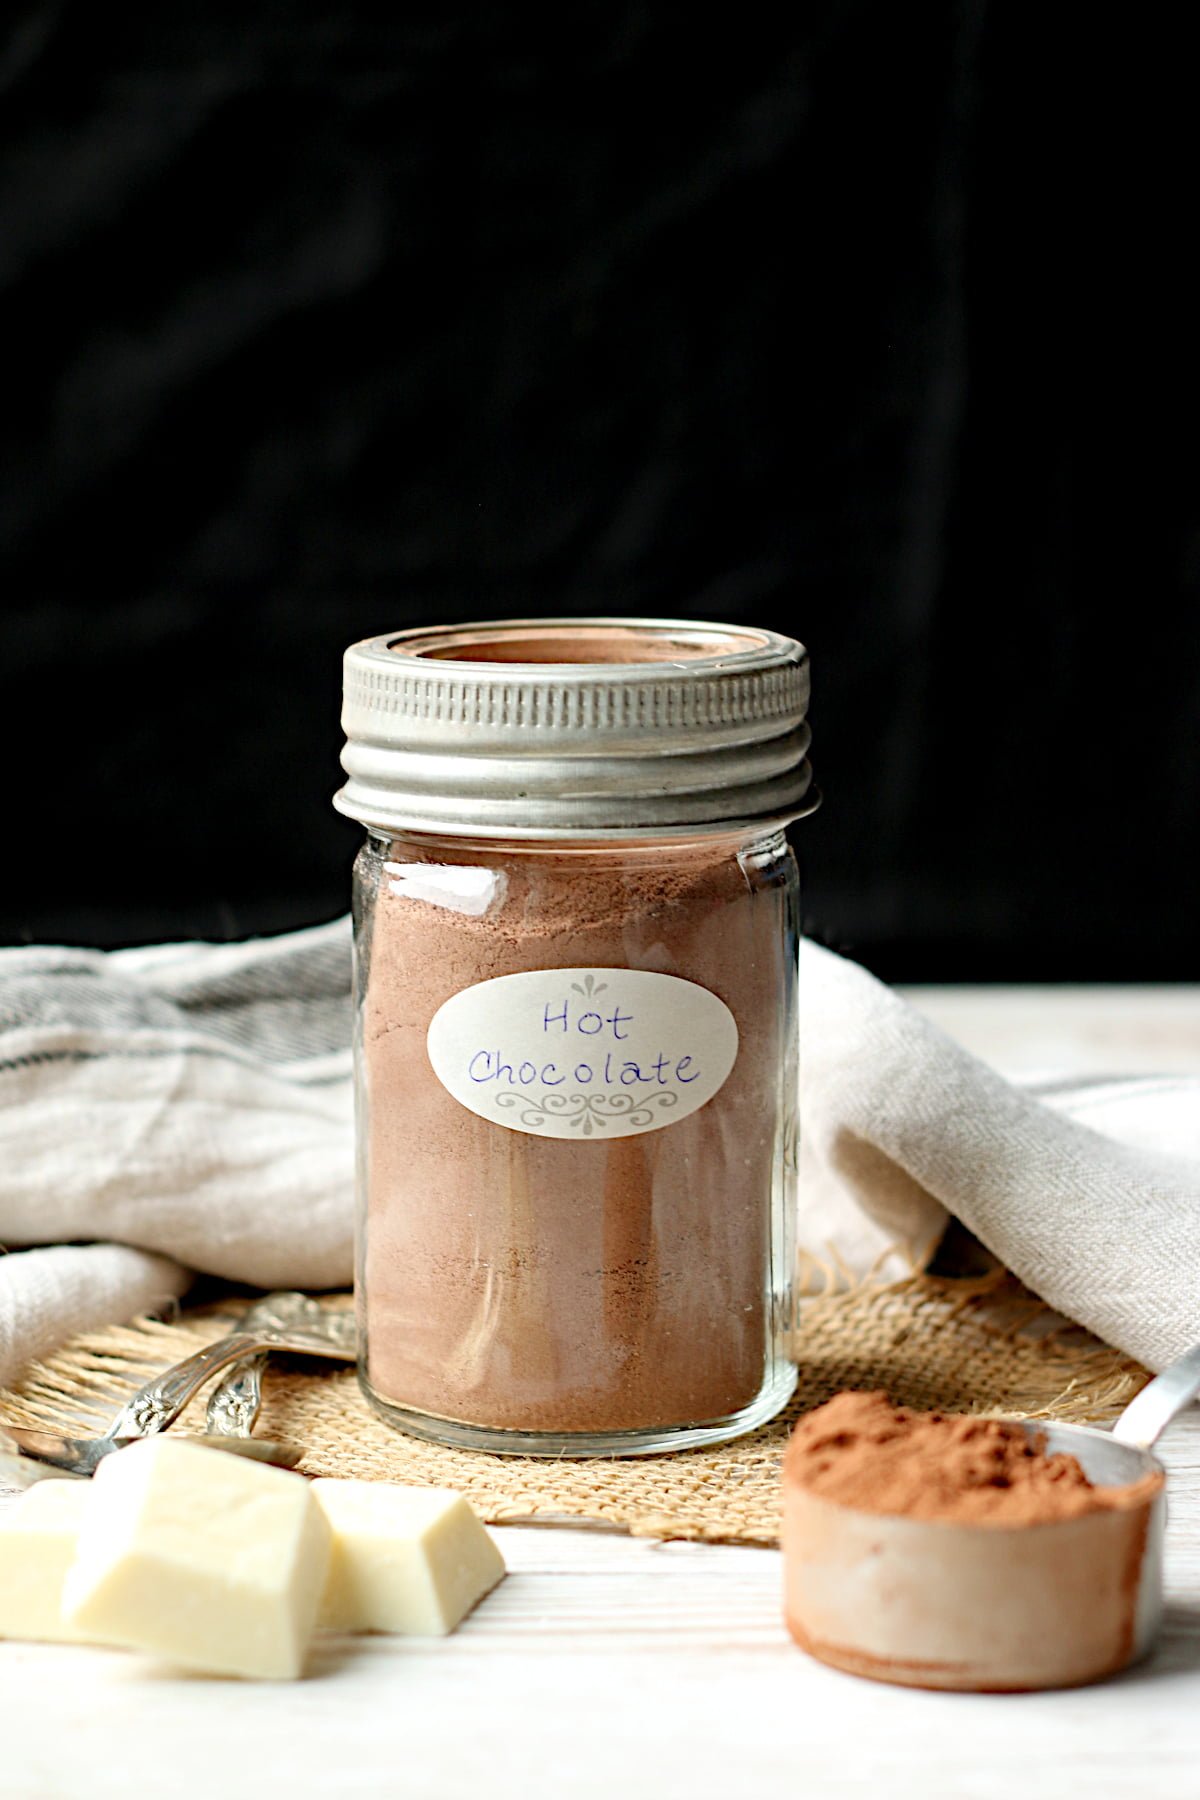 DIY Hot Chocolate Mix in a glass jar.